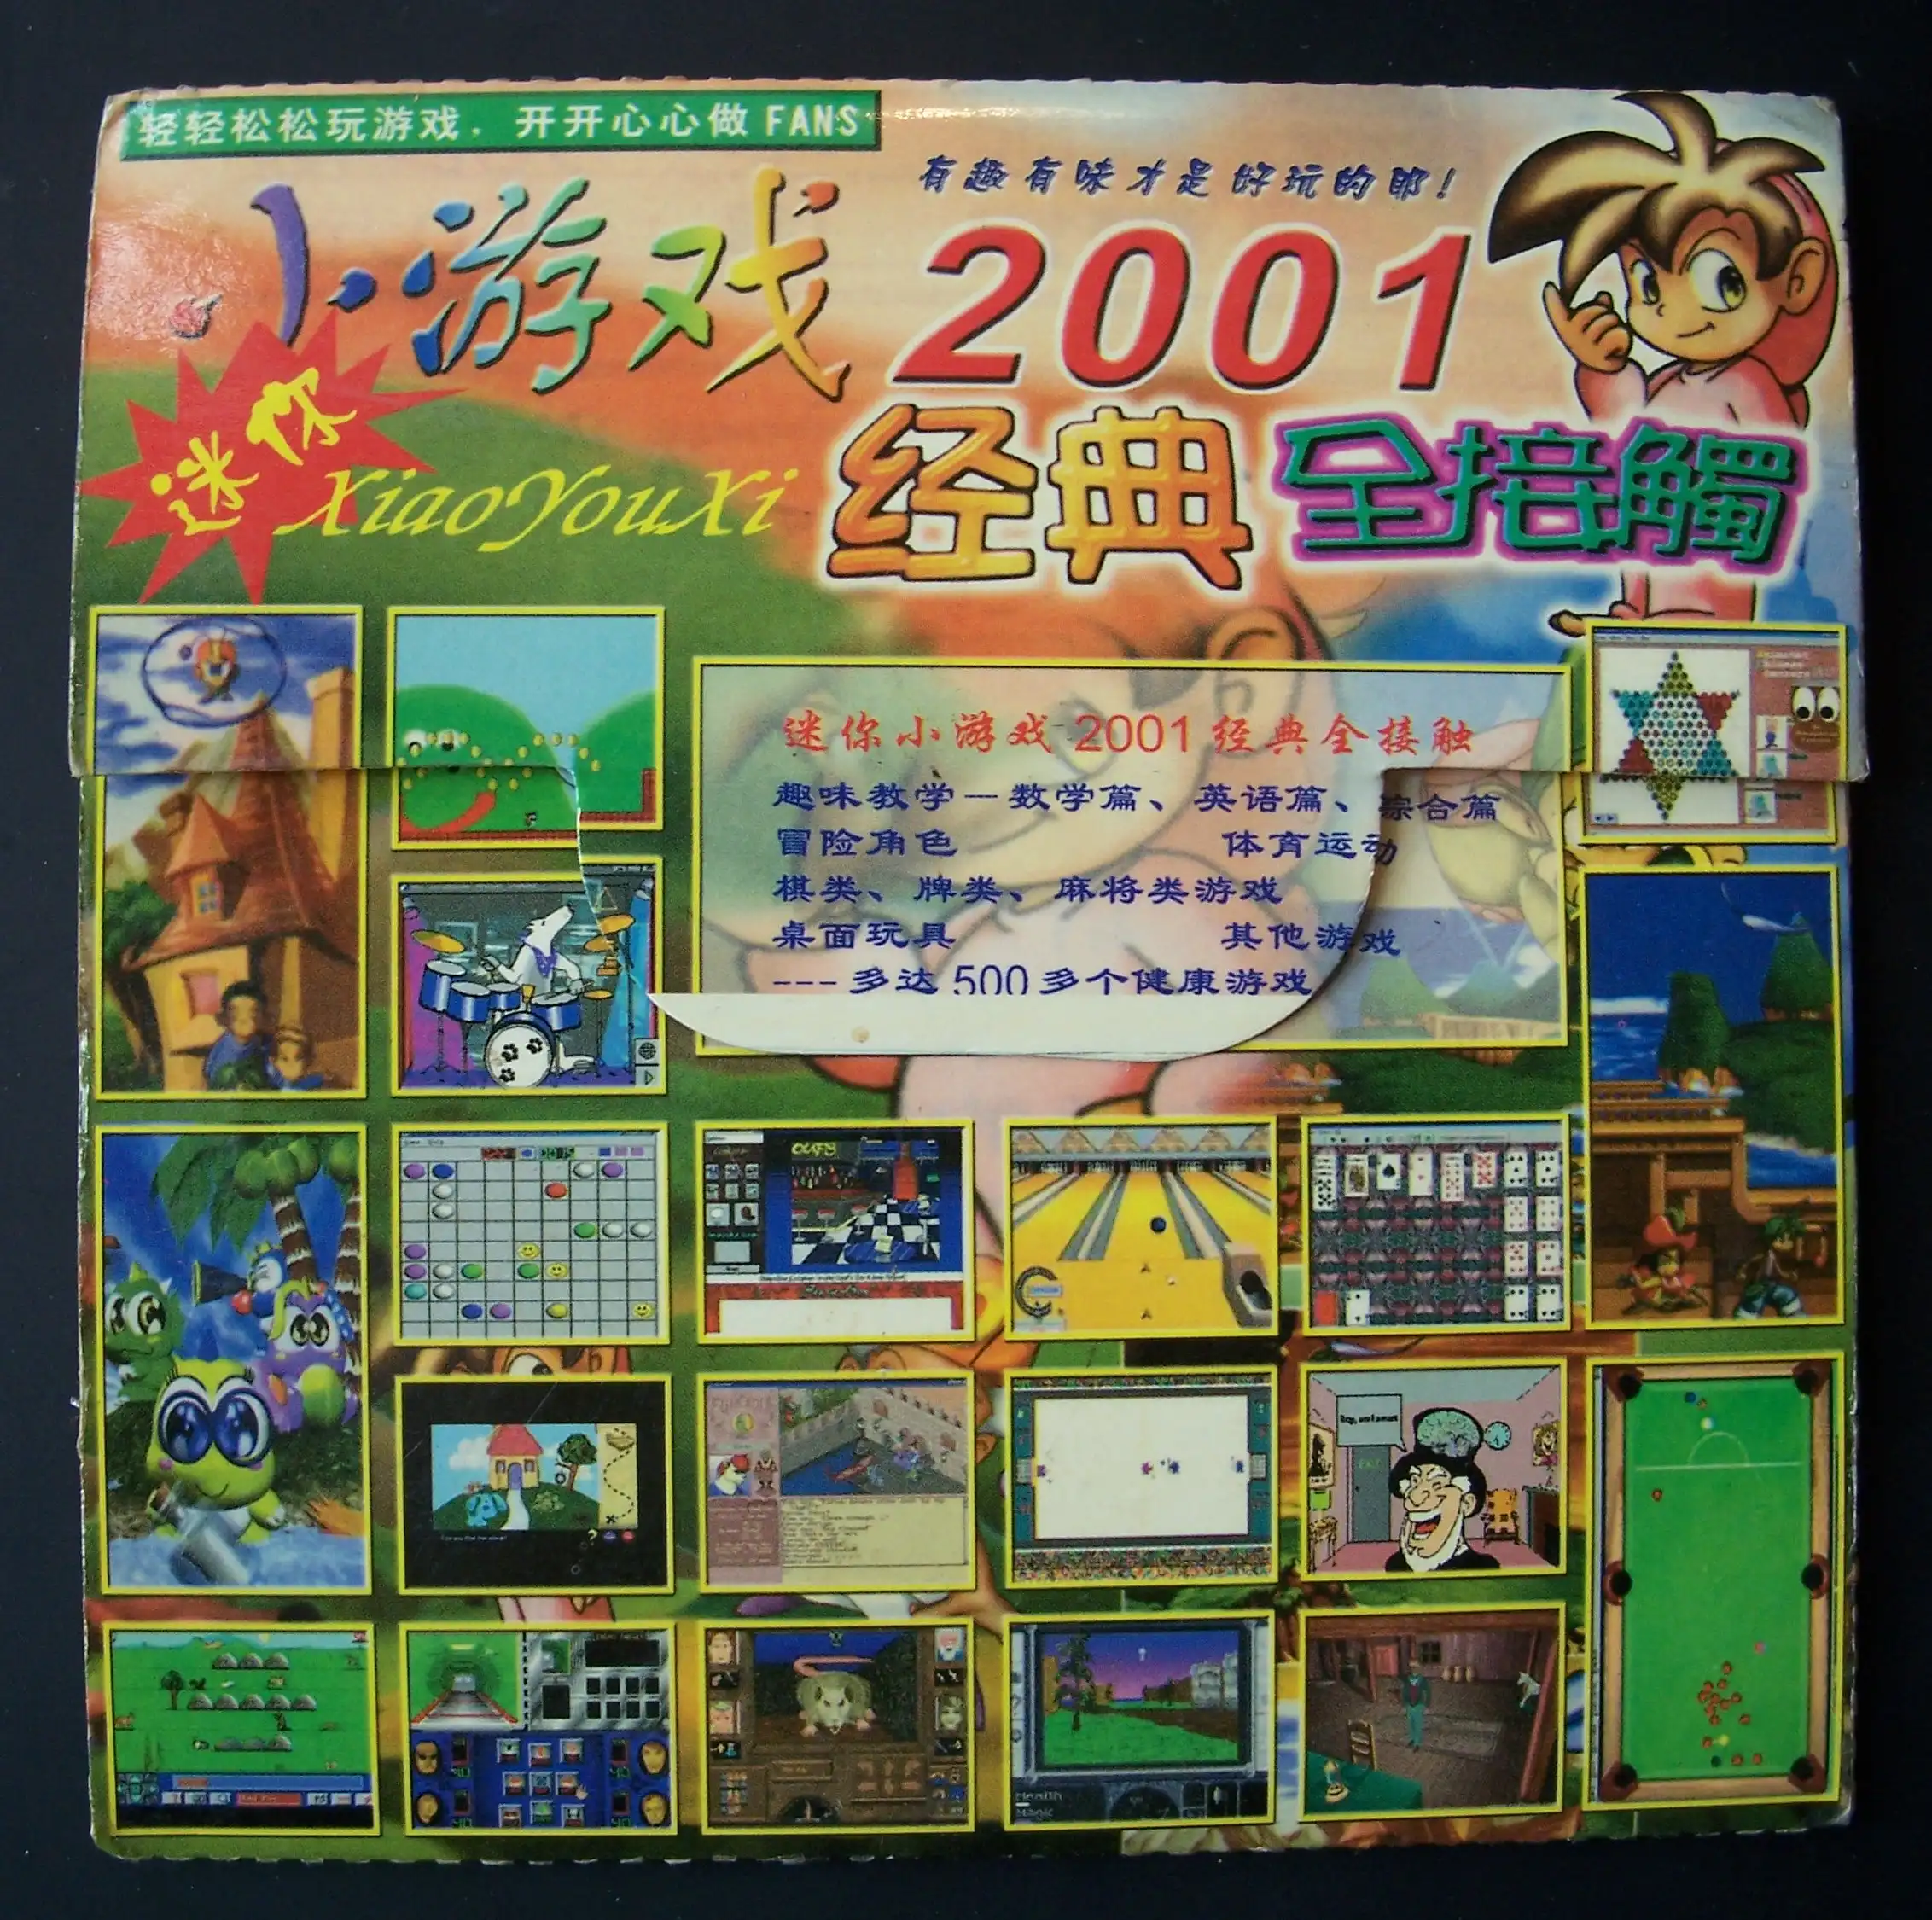 免费下载 怀旧迷你小游戏2001年经典全接触游戏合集 win98可运行